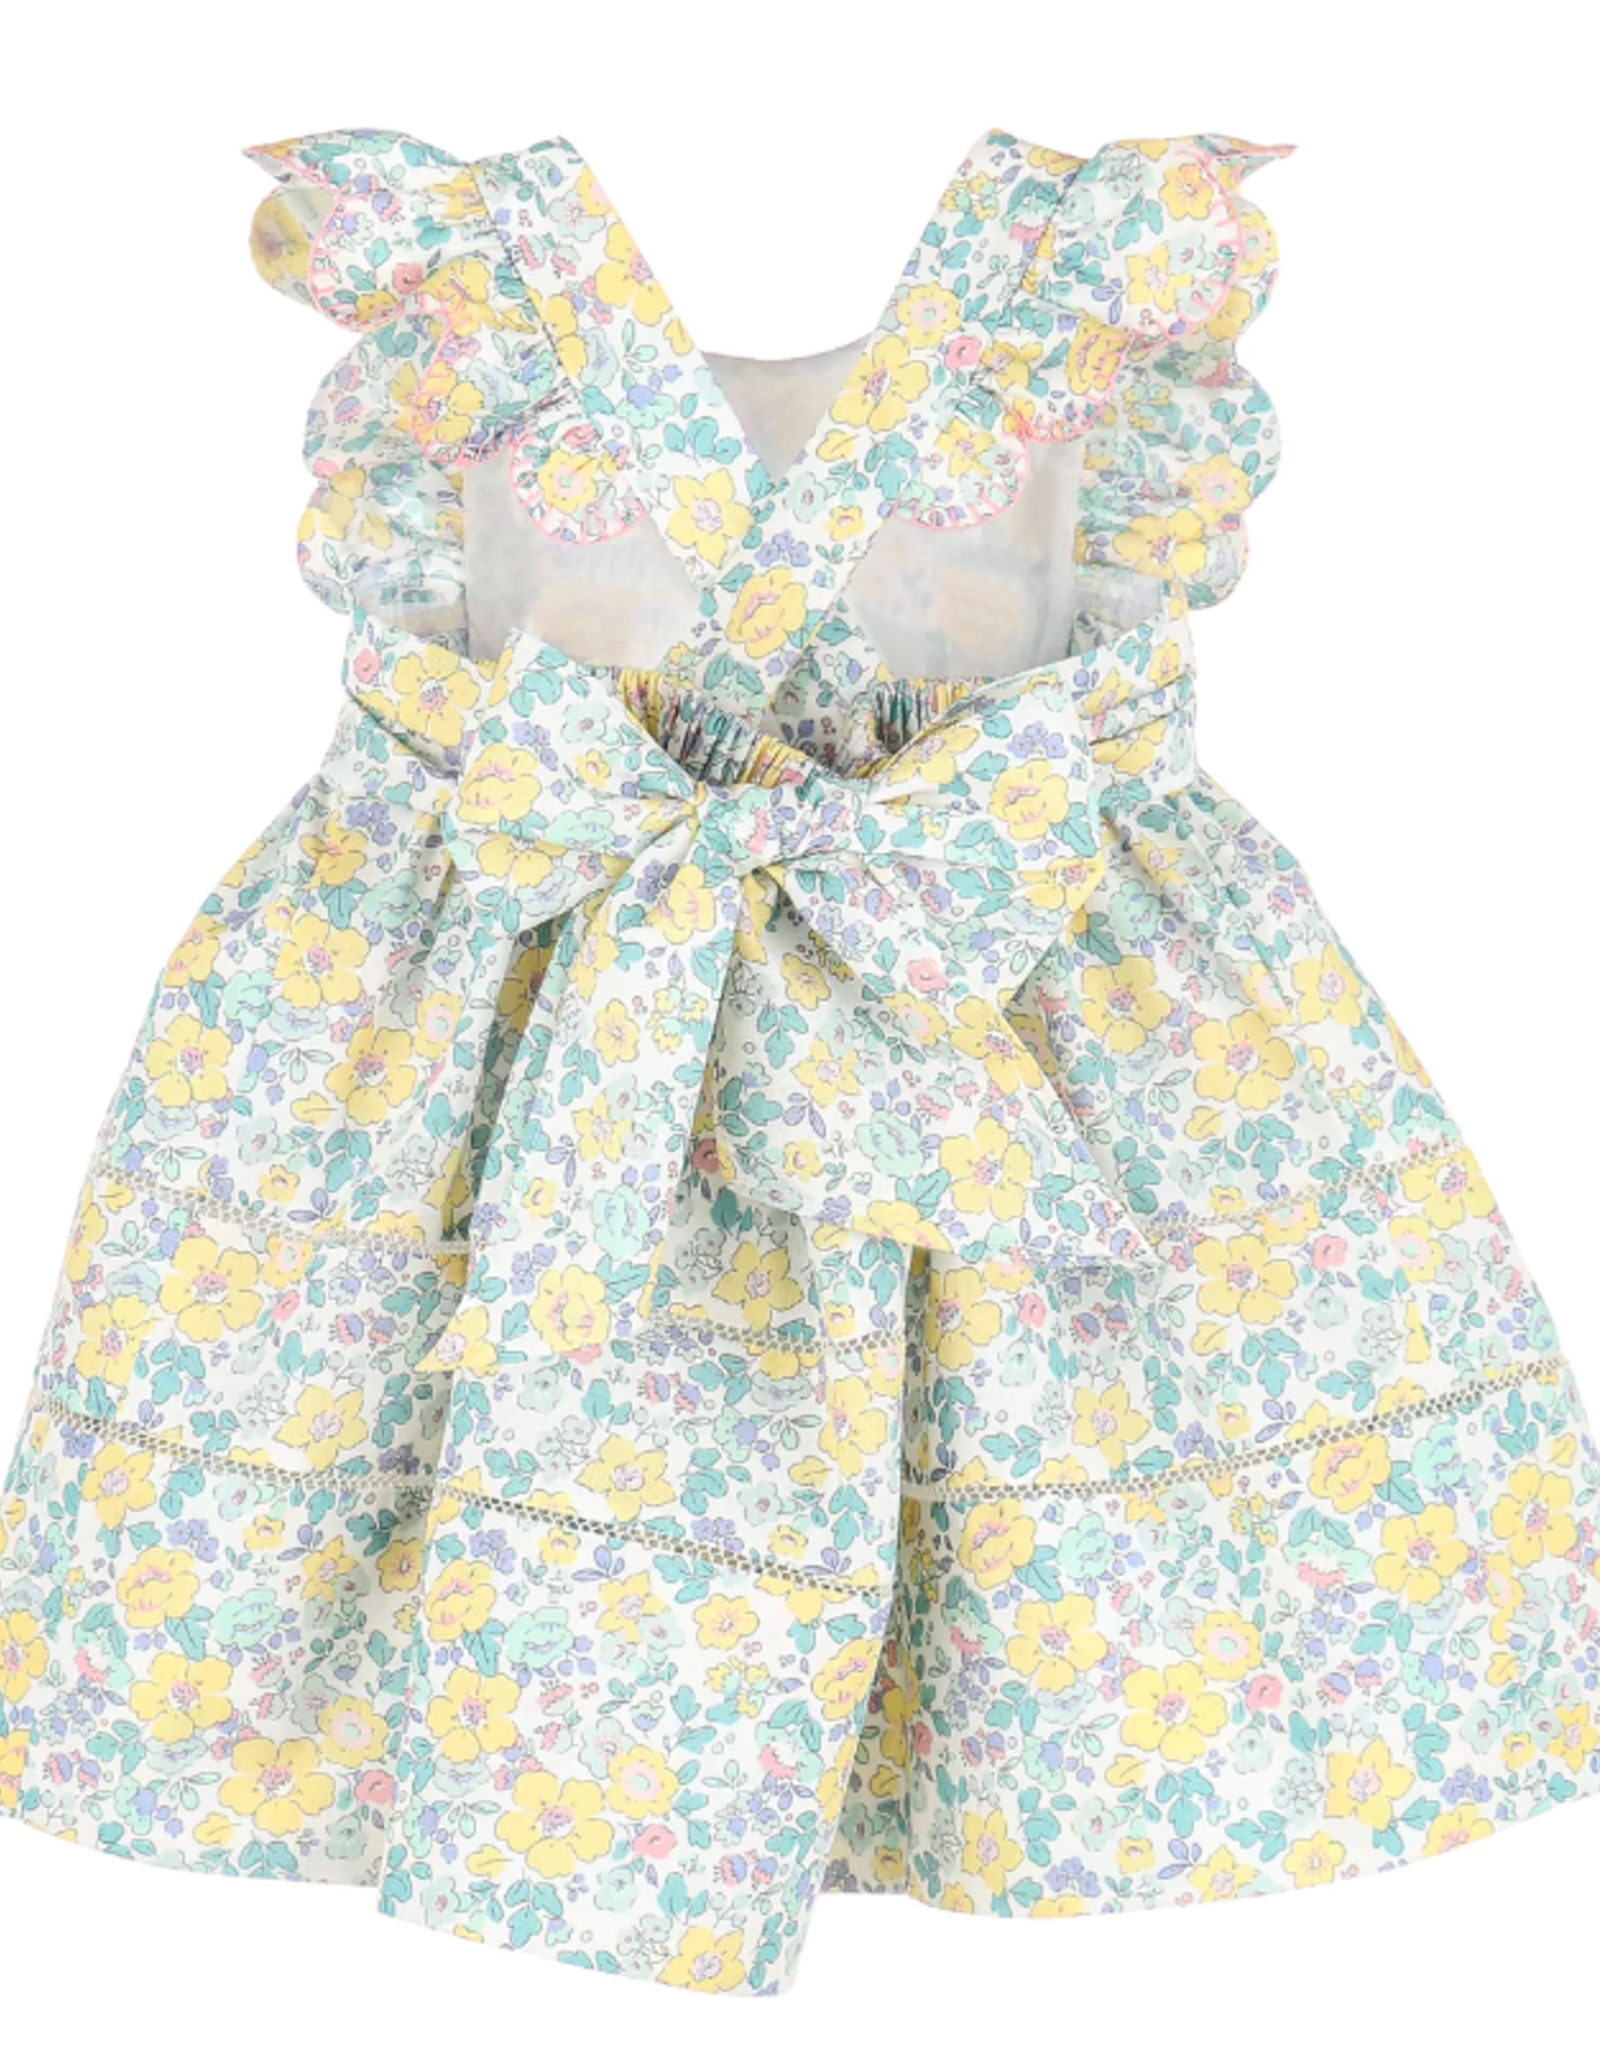 Sophie & Lucas Sunny Spring Dress, Floral Print